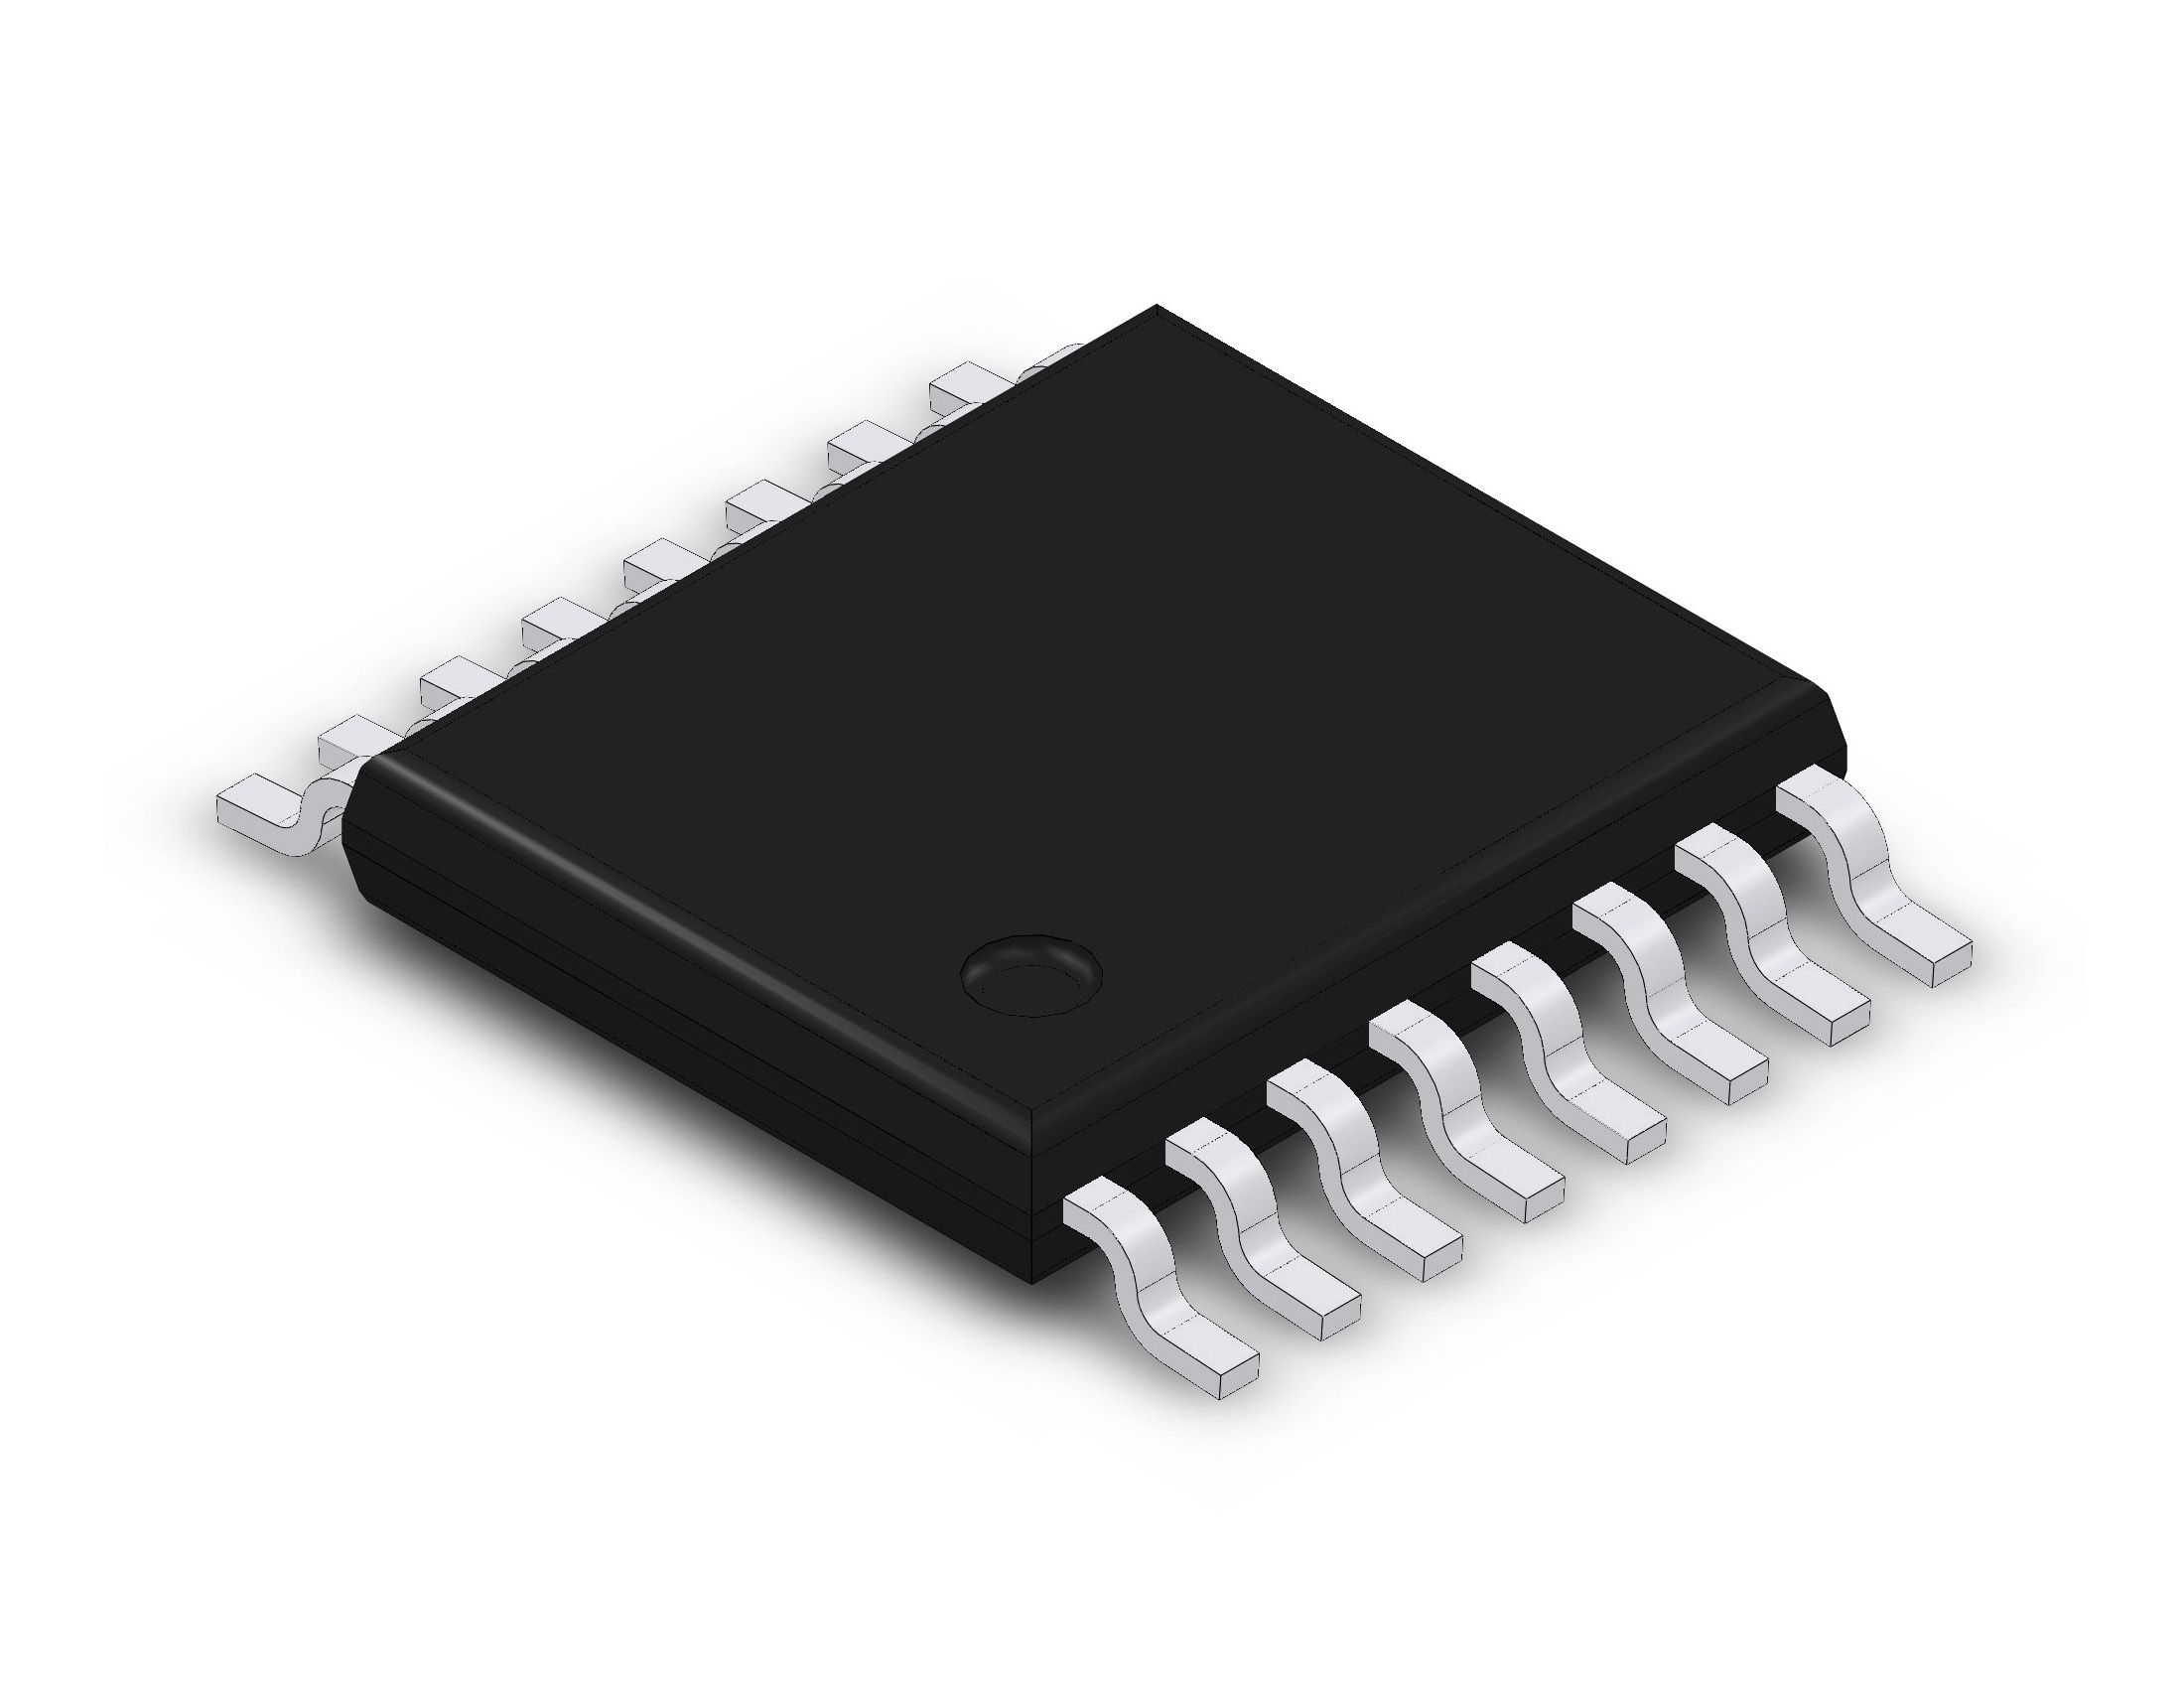 MKE04Z8VTG4 TSSOP-16 ARM Cortex-M0+ 48MHz @ electrokit